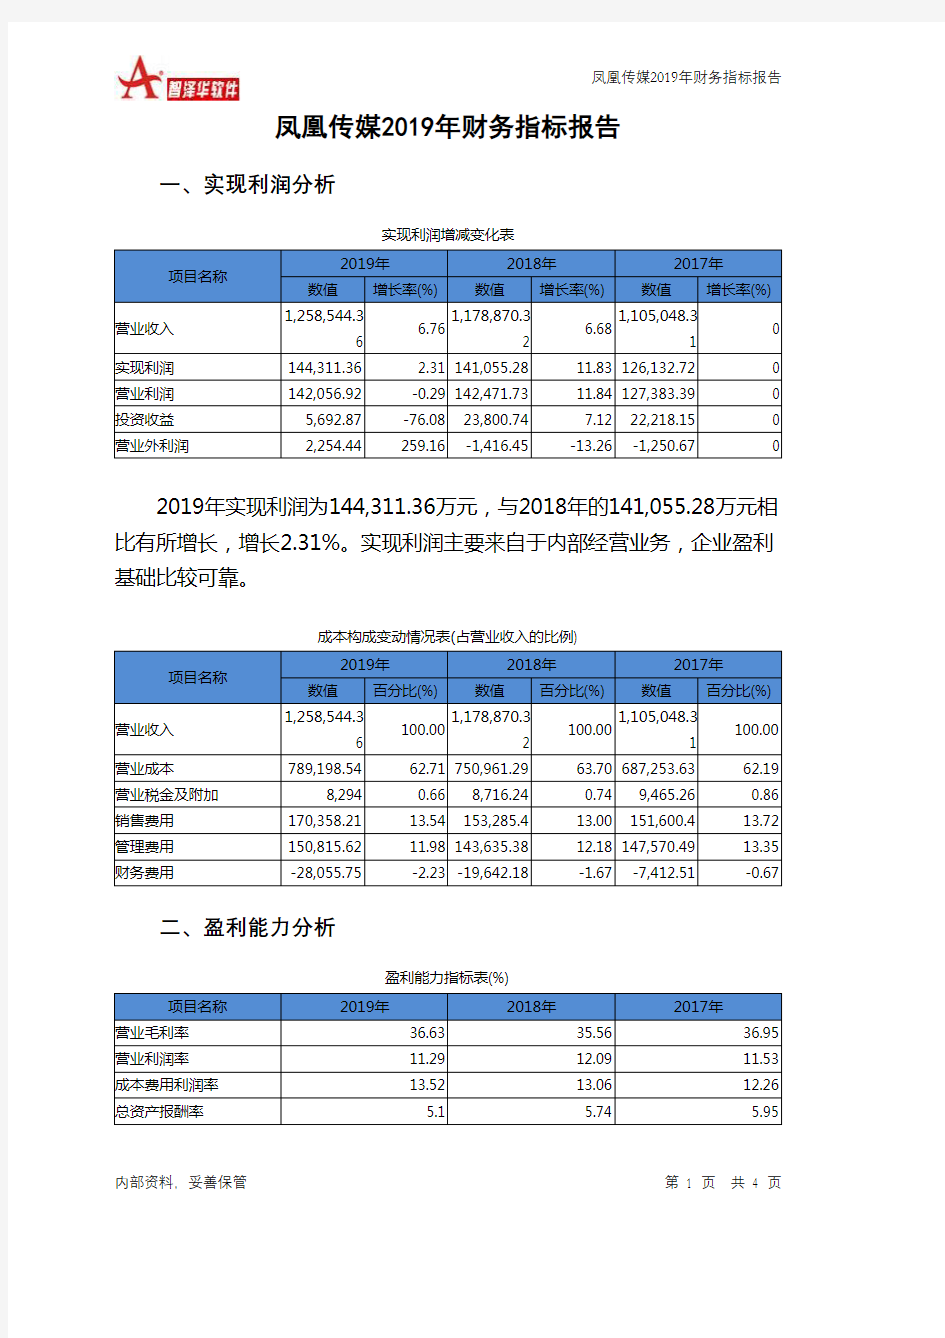 凤凰传媒2019年财务指标报告